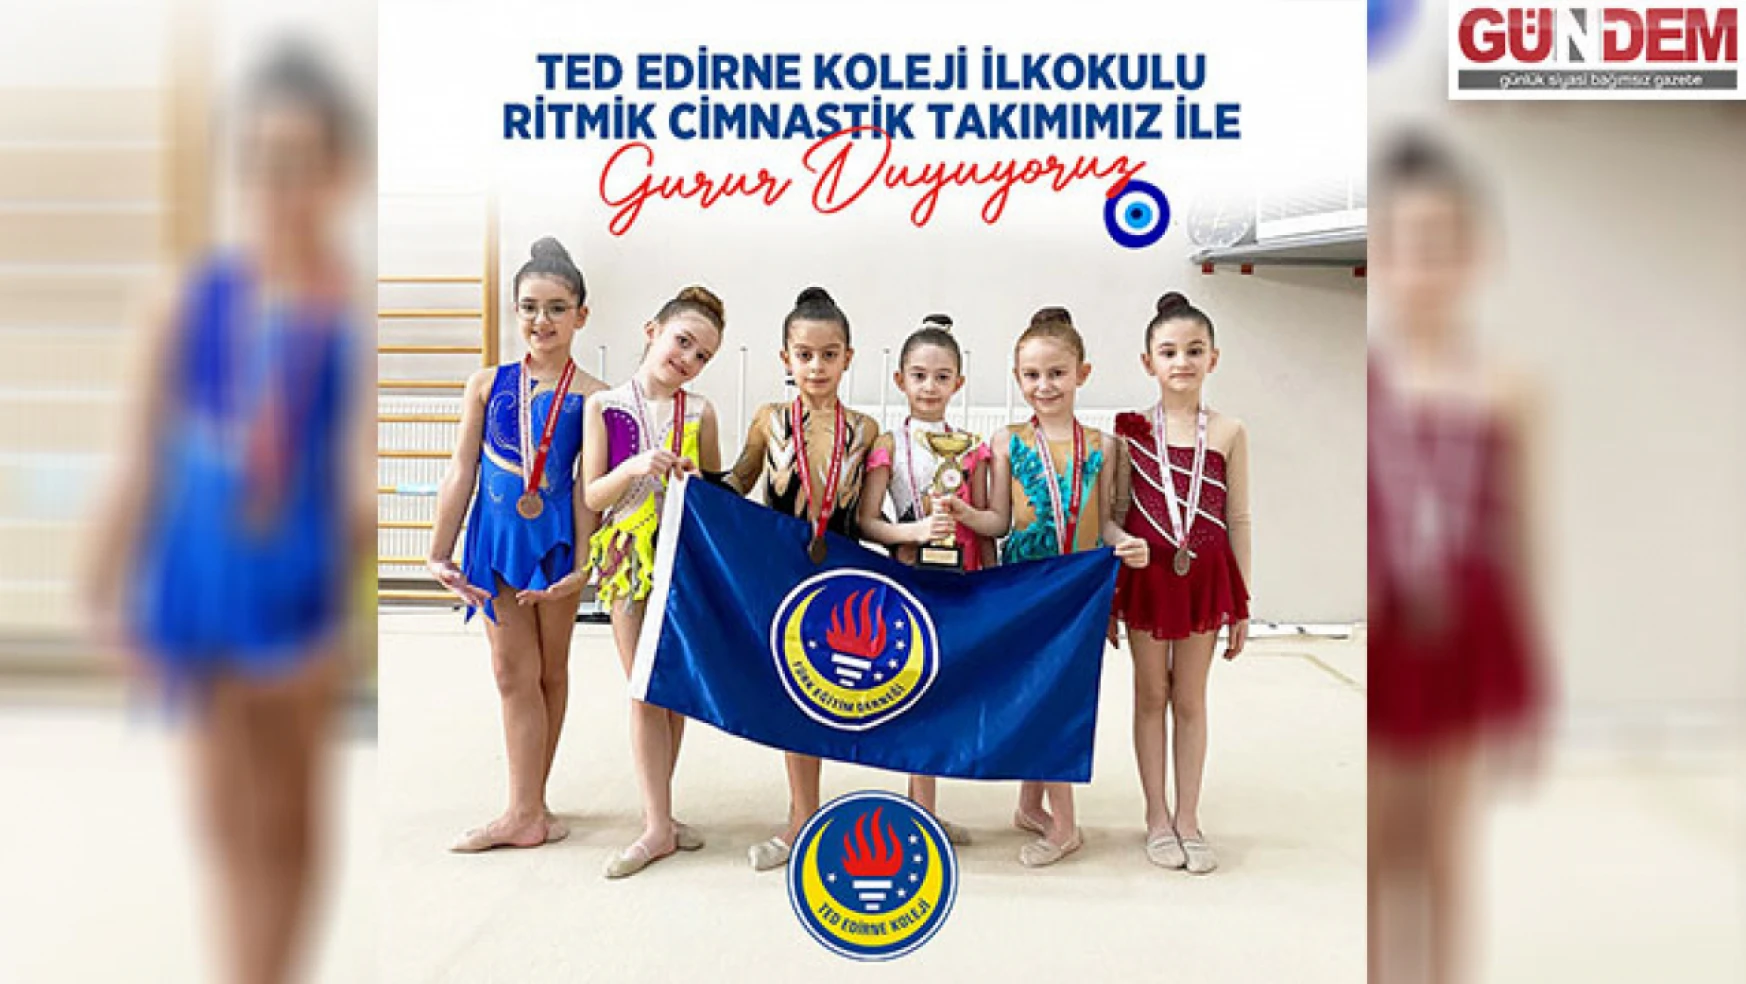 TED Edirne Koleji ilkokulu jimnastik takımı başarılı bir turnuva geçirdi